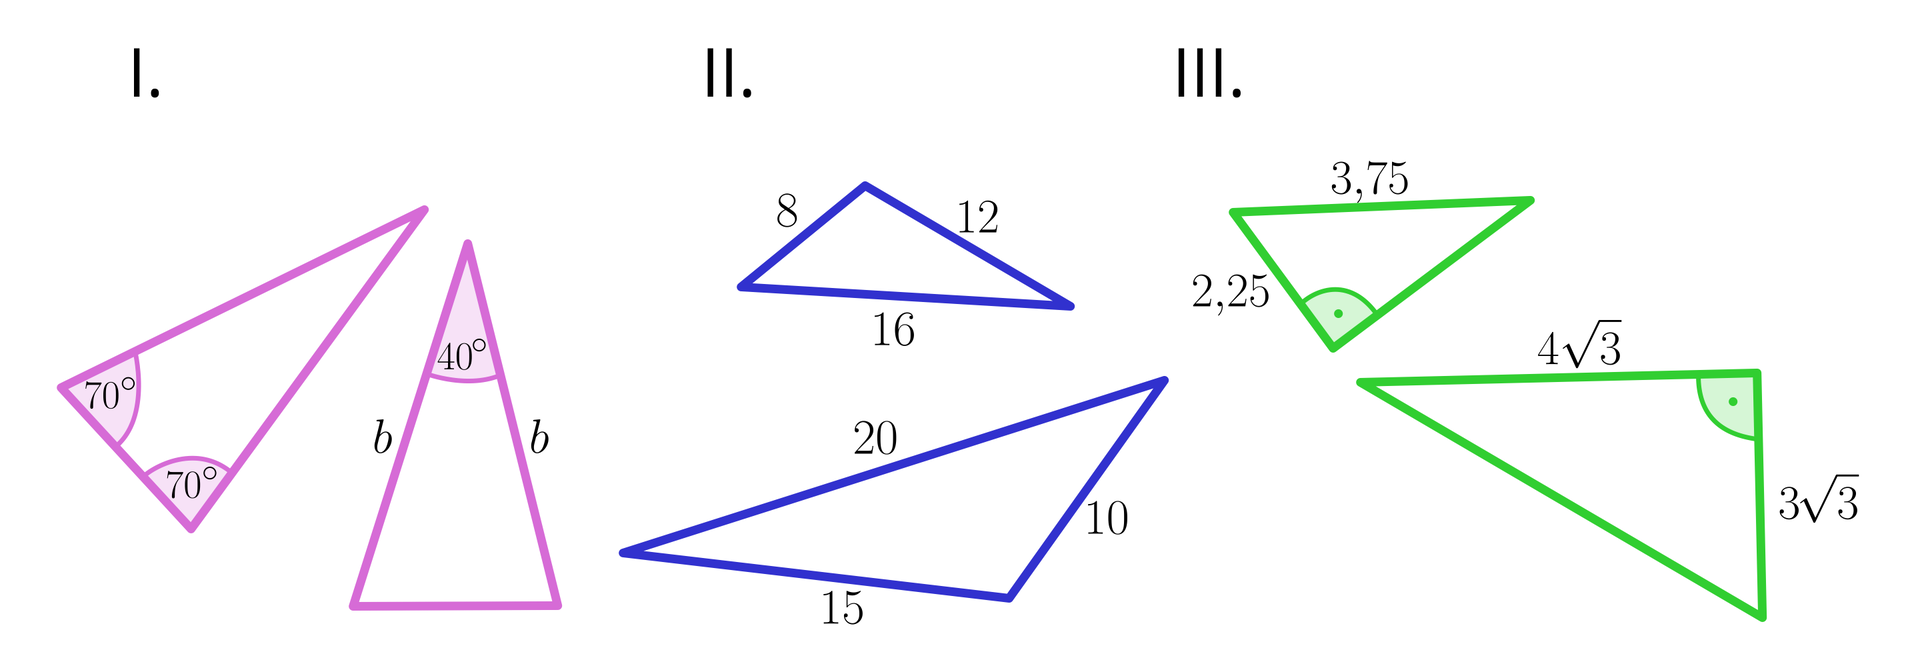 Ilustracja składa się z trzech części. Część pierwsza przedstawia trójkąt, którym zaznaczono dwa kąty przy podstawie. Oba o mierze 70 stopni.  Drugi trójkąt jest równoramienny, a równe boki rozpinają kąt o mierze 40 stopni. Część druga przedstawia dwa trójkąty. Boki pierwszego mają długości 8, 12 oraz 16, a boki drugiego trójkąta mają długości 10, 15 oraz 20; część trzecia przedstawia dwa trójkąty prostokątne: pierwszy ma przeciwprostokątną o długości 3,75,  a jedna z przyprostokątnych ma długość 2,25. W drugim trójkącie jedna z przyprostokątnych ma długość 43, a druga 33.